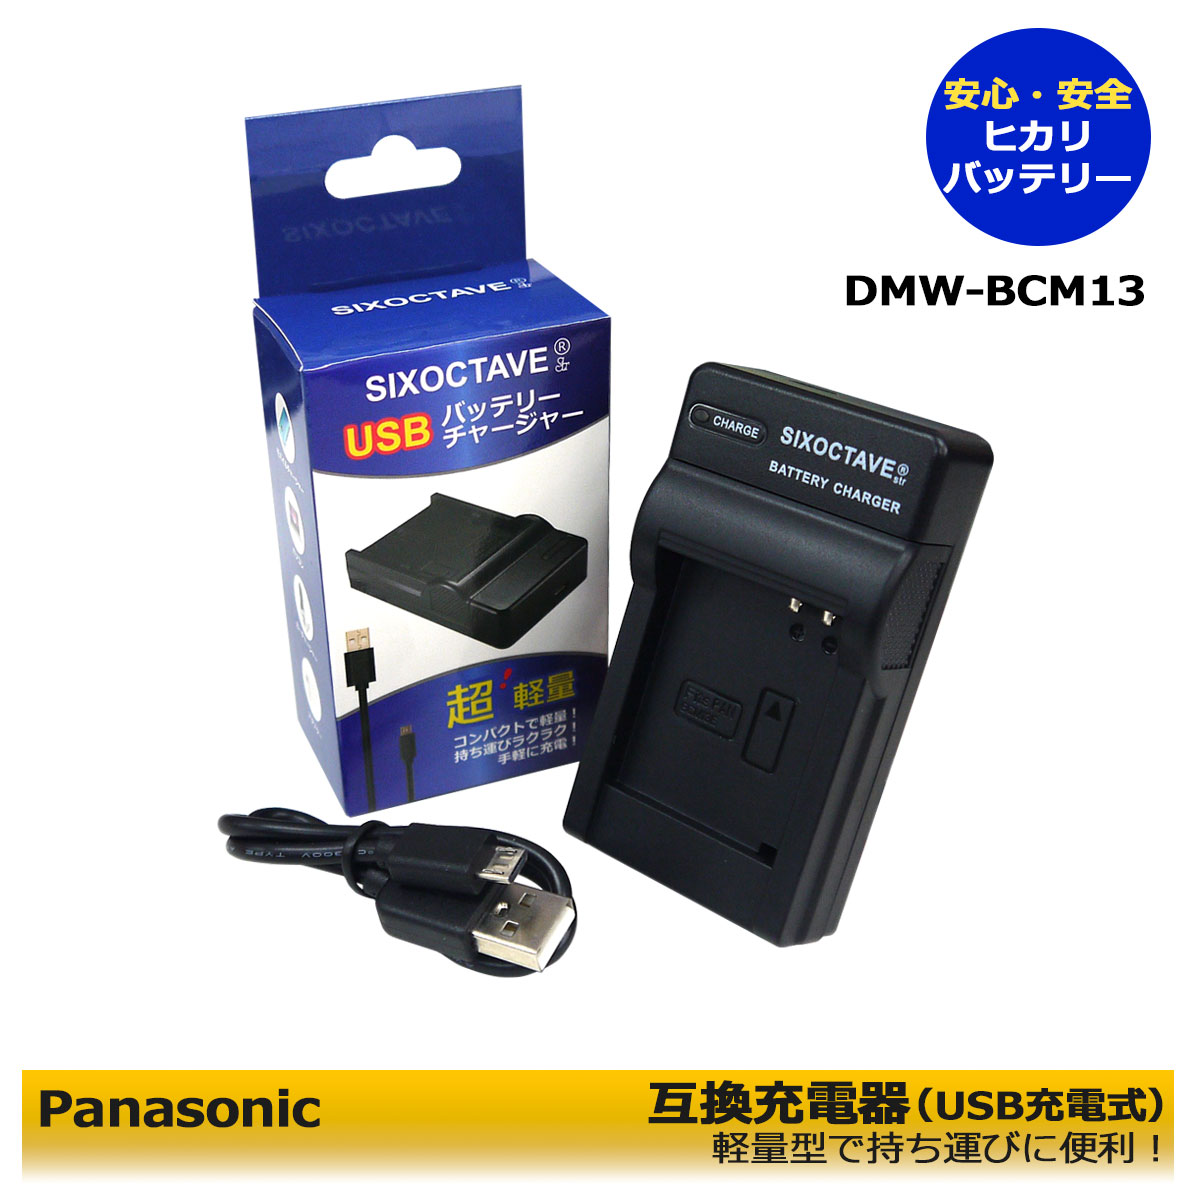 DMW-BTC11 DMW-BCM13 パナソニック 互換USBチャージャー デジタルカメラ用 DMC-LZ40 DMC-LZ40-K  DMC-ZS27 DMC-ZS35-K DMC-ZS35-W DMC-ZS35 DMC-ZS30 DMC-ZS30-R DMC-ZS30-S  DMC-ZS30-W DMC-ZS30-K 純正品にも対応 2021年ファッション福袋